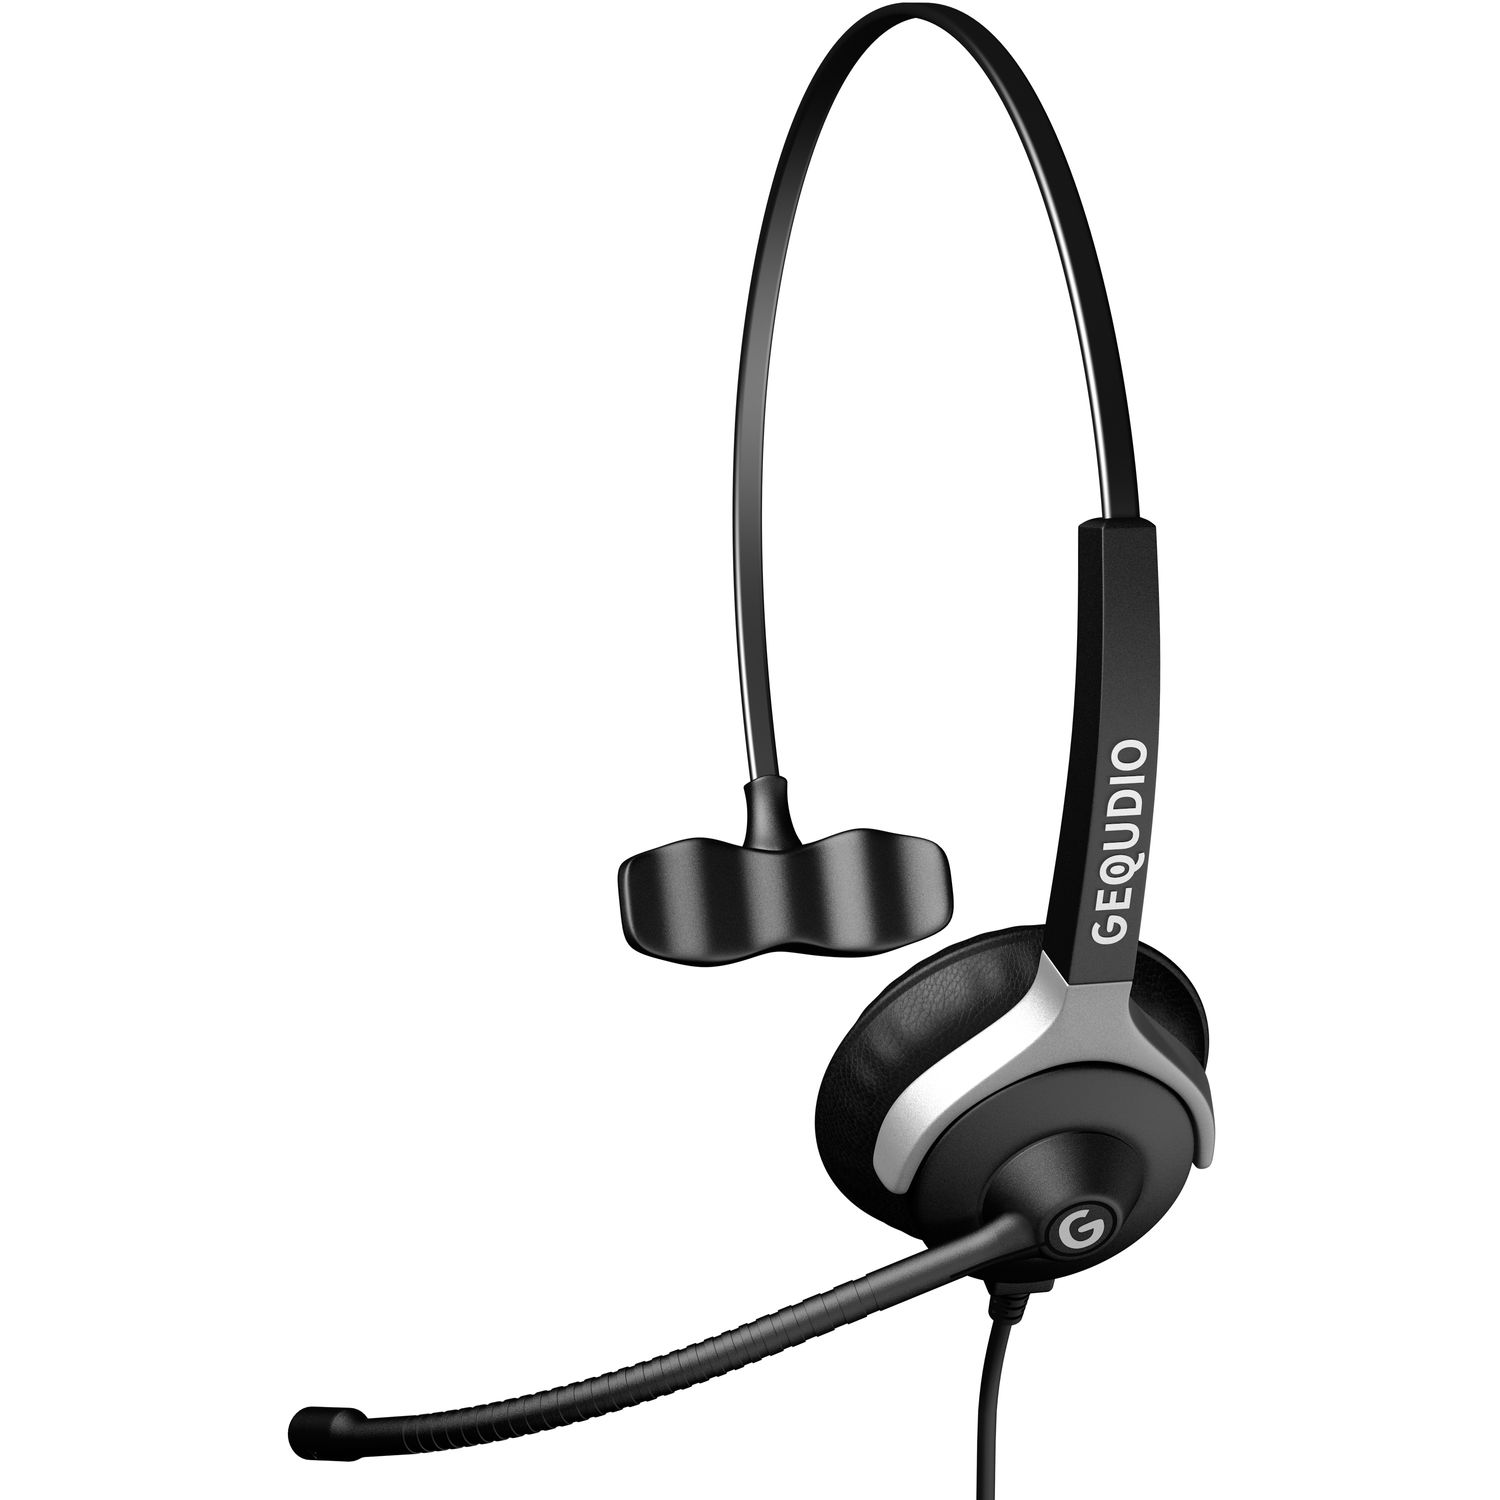 GEQUDIO Schwarz 1-Ohr PC Headset mit On-ear Headset für USB MAC,